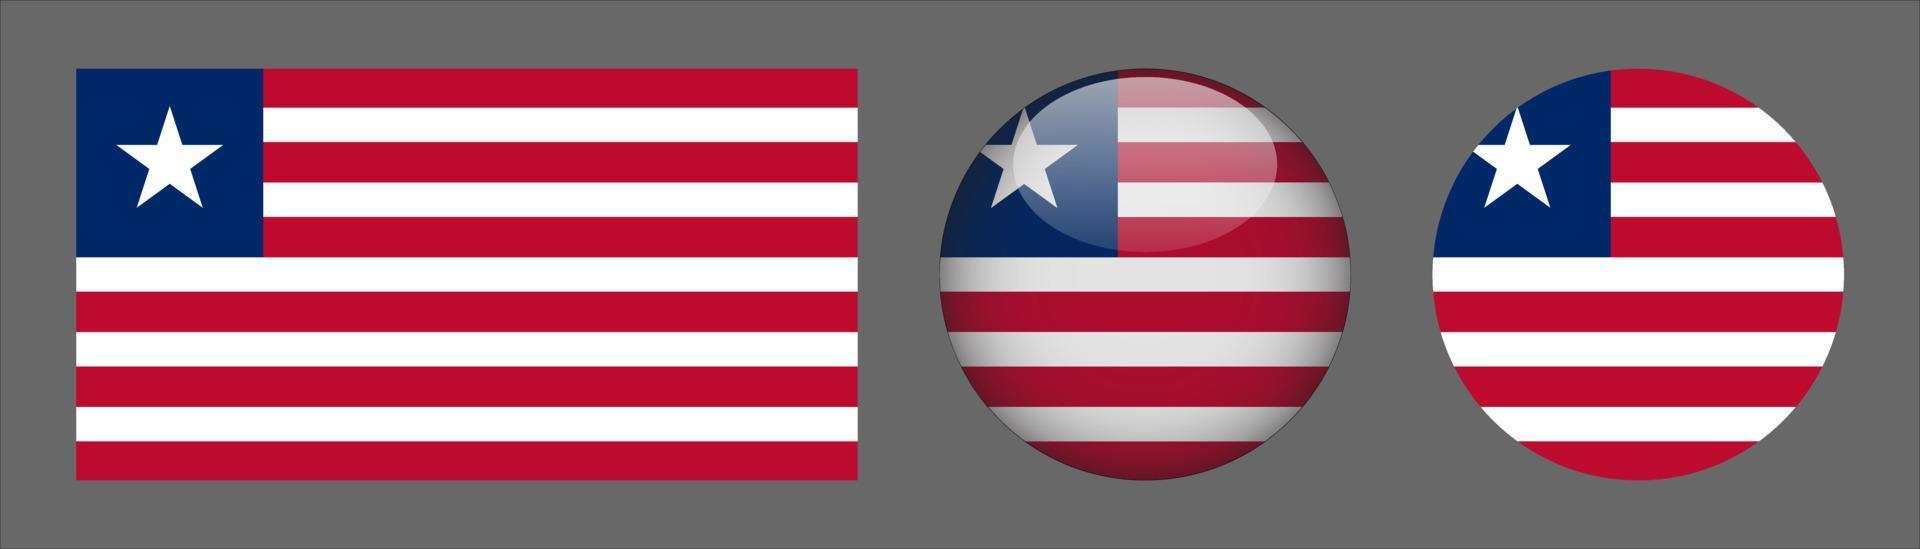 set di bandiere della liberia, rapporto di dimensioni originali, 3d arrotondato e piatto arrotondato vettore